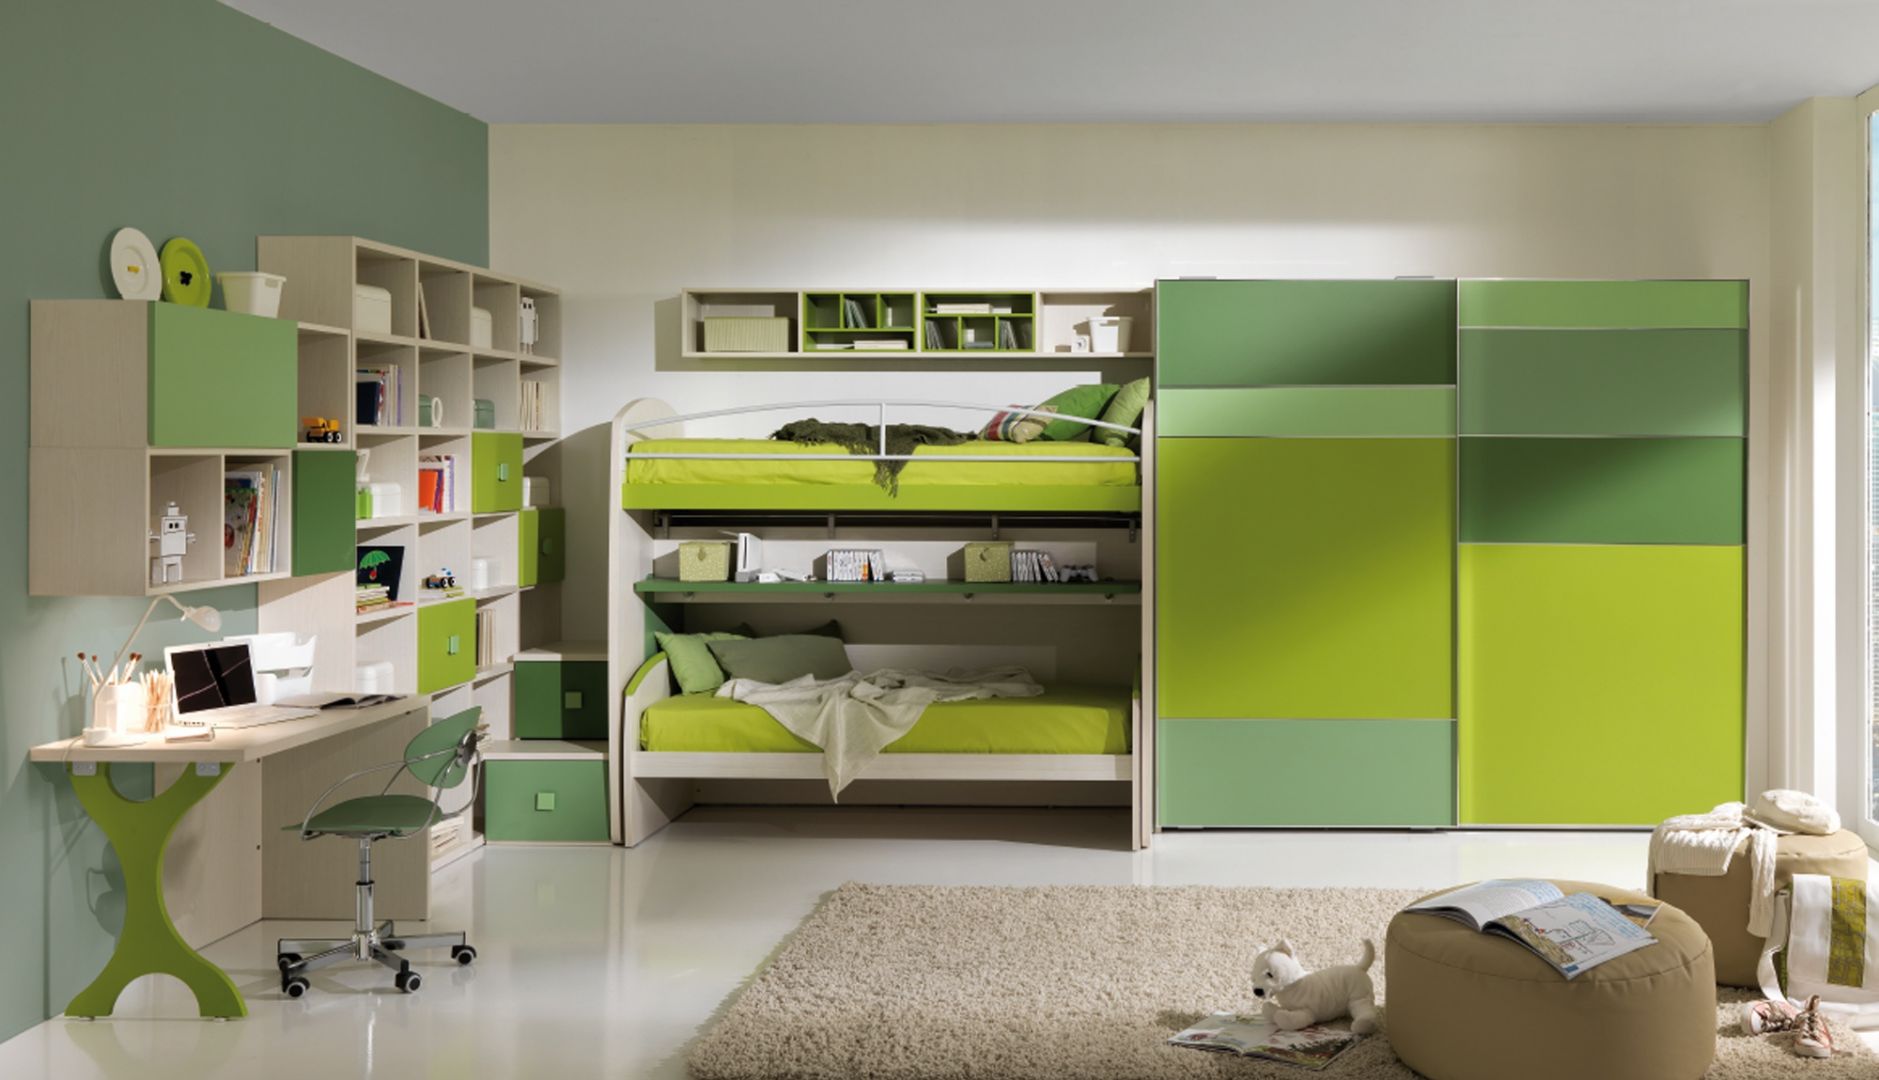 Piętrowe łóżko, przestronna szafa, ogromna ilość miejsca na książki, dzięki kubikowym półkom, a także biurko. Wszystko utrzymane w kolorach zieleni. Fot. Giessegi